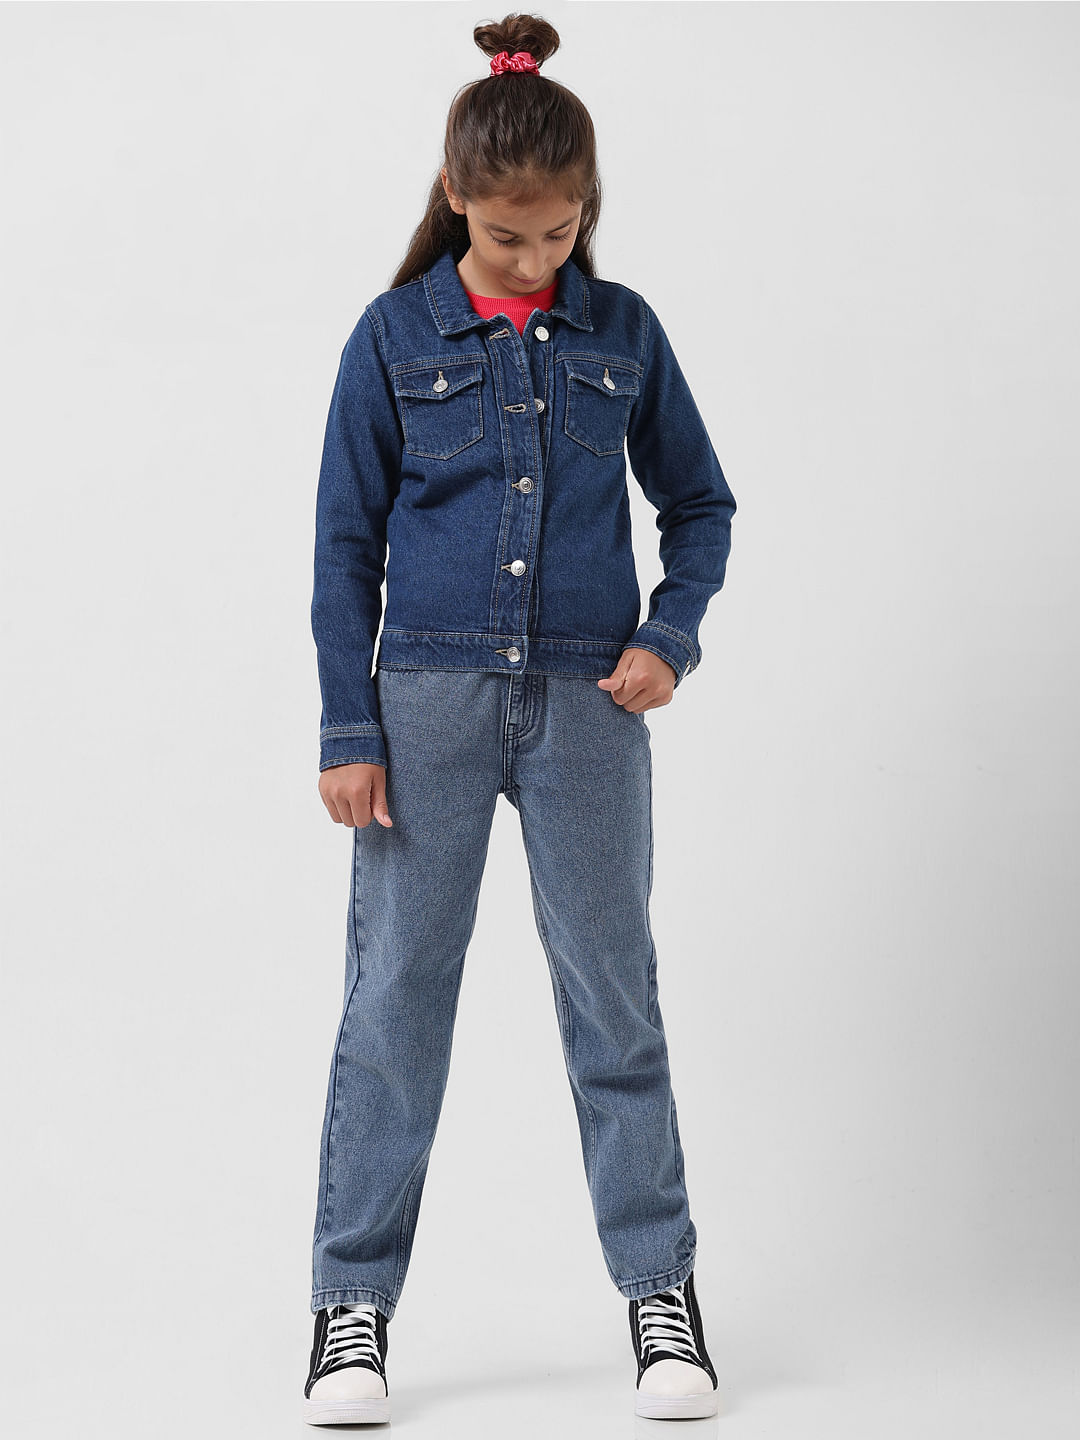 Best Oversized Denim Jacket 2024 - Cute Oversized Jean Jackets